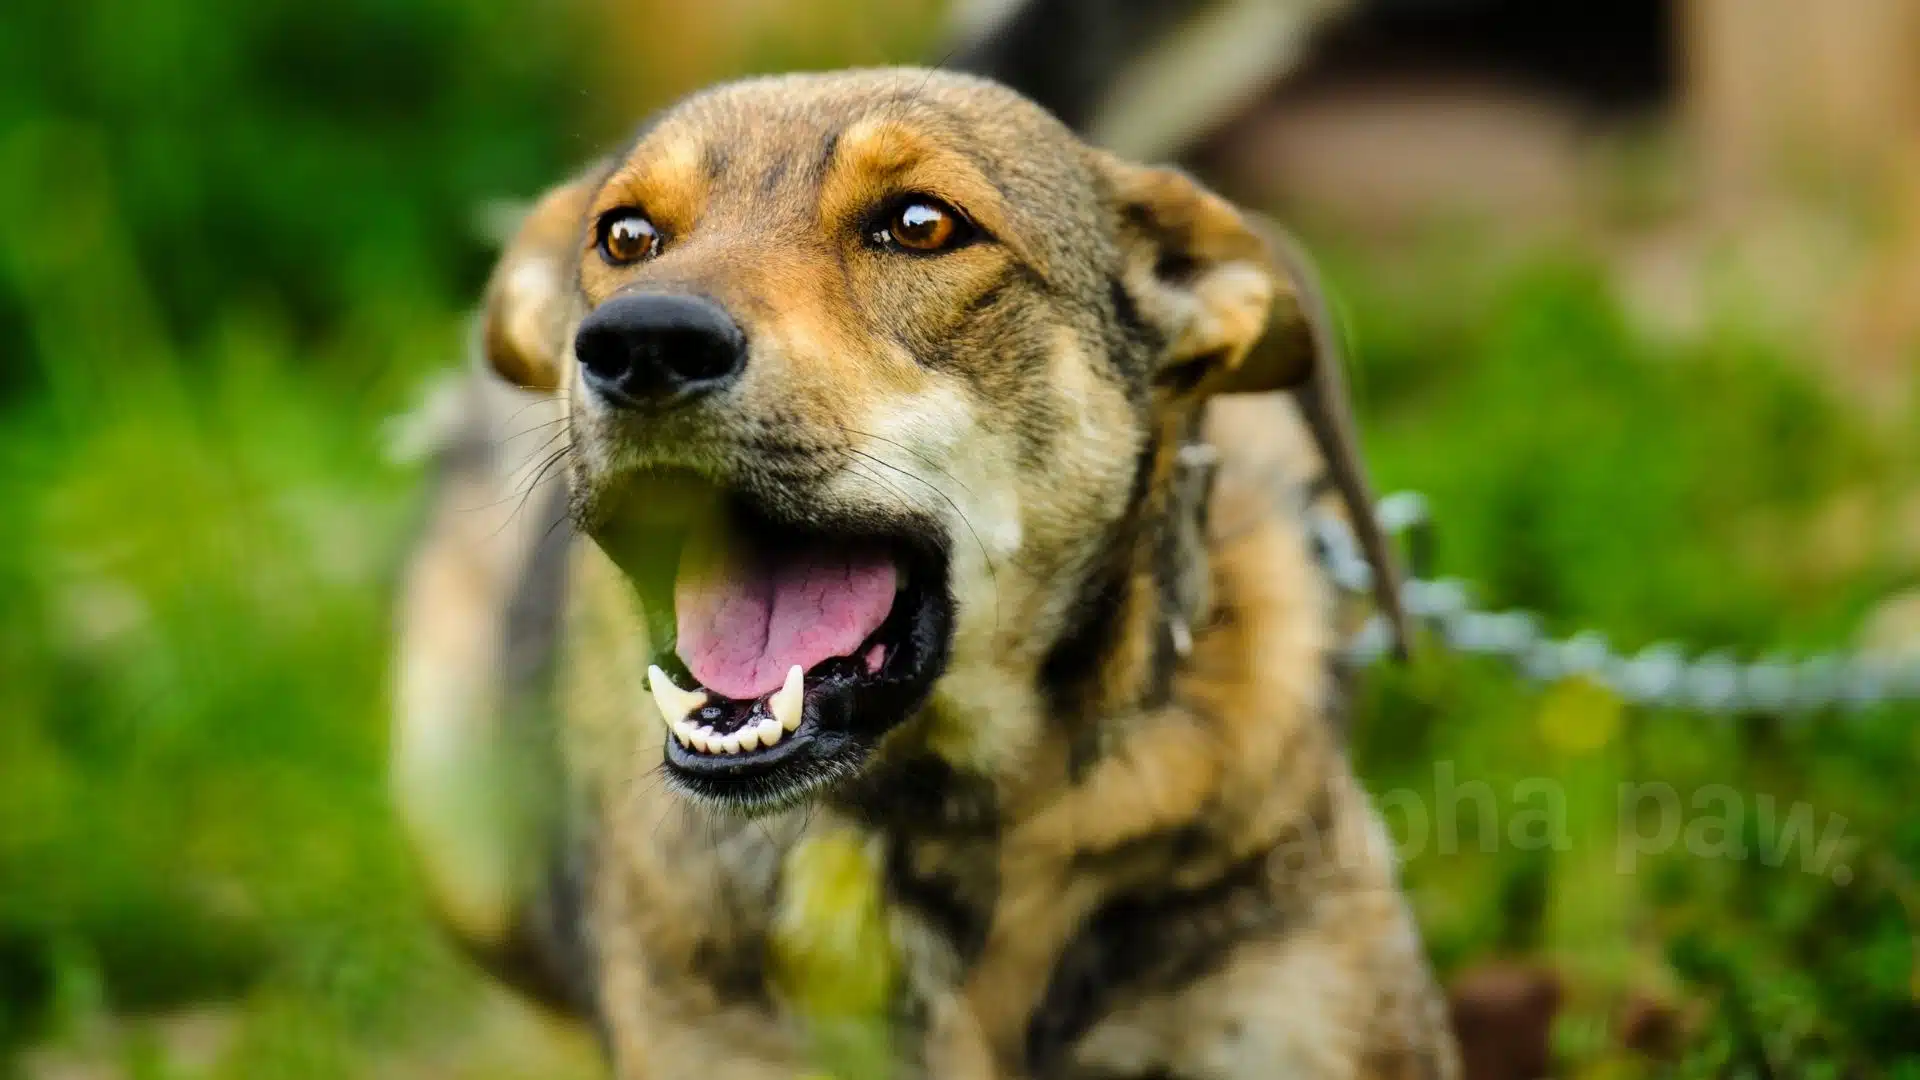 Dog Rabies: A Public Health Threat